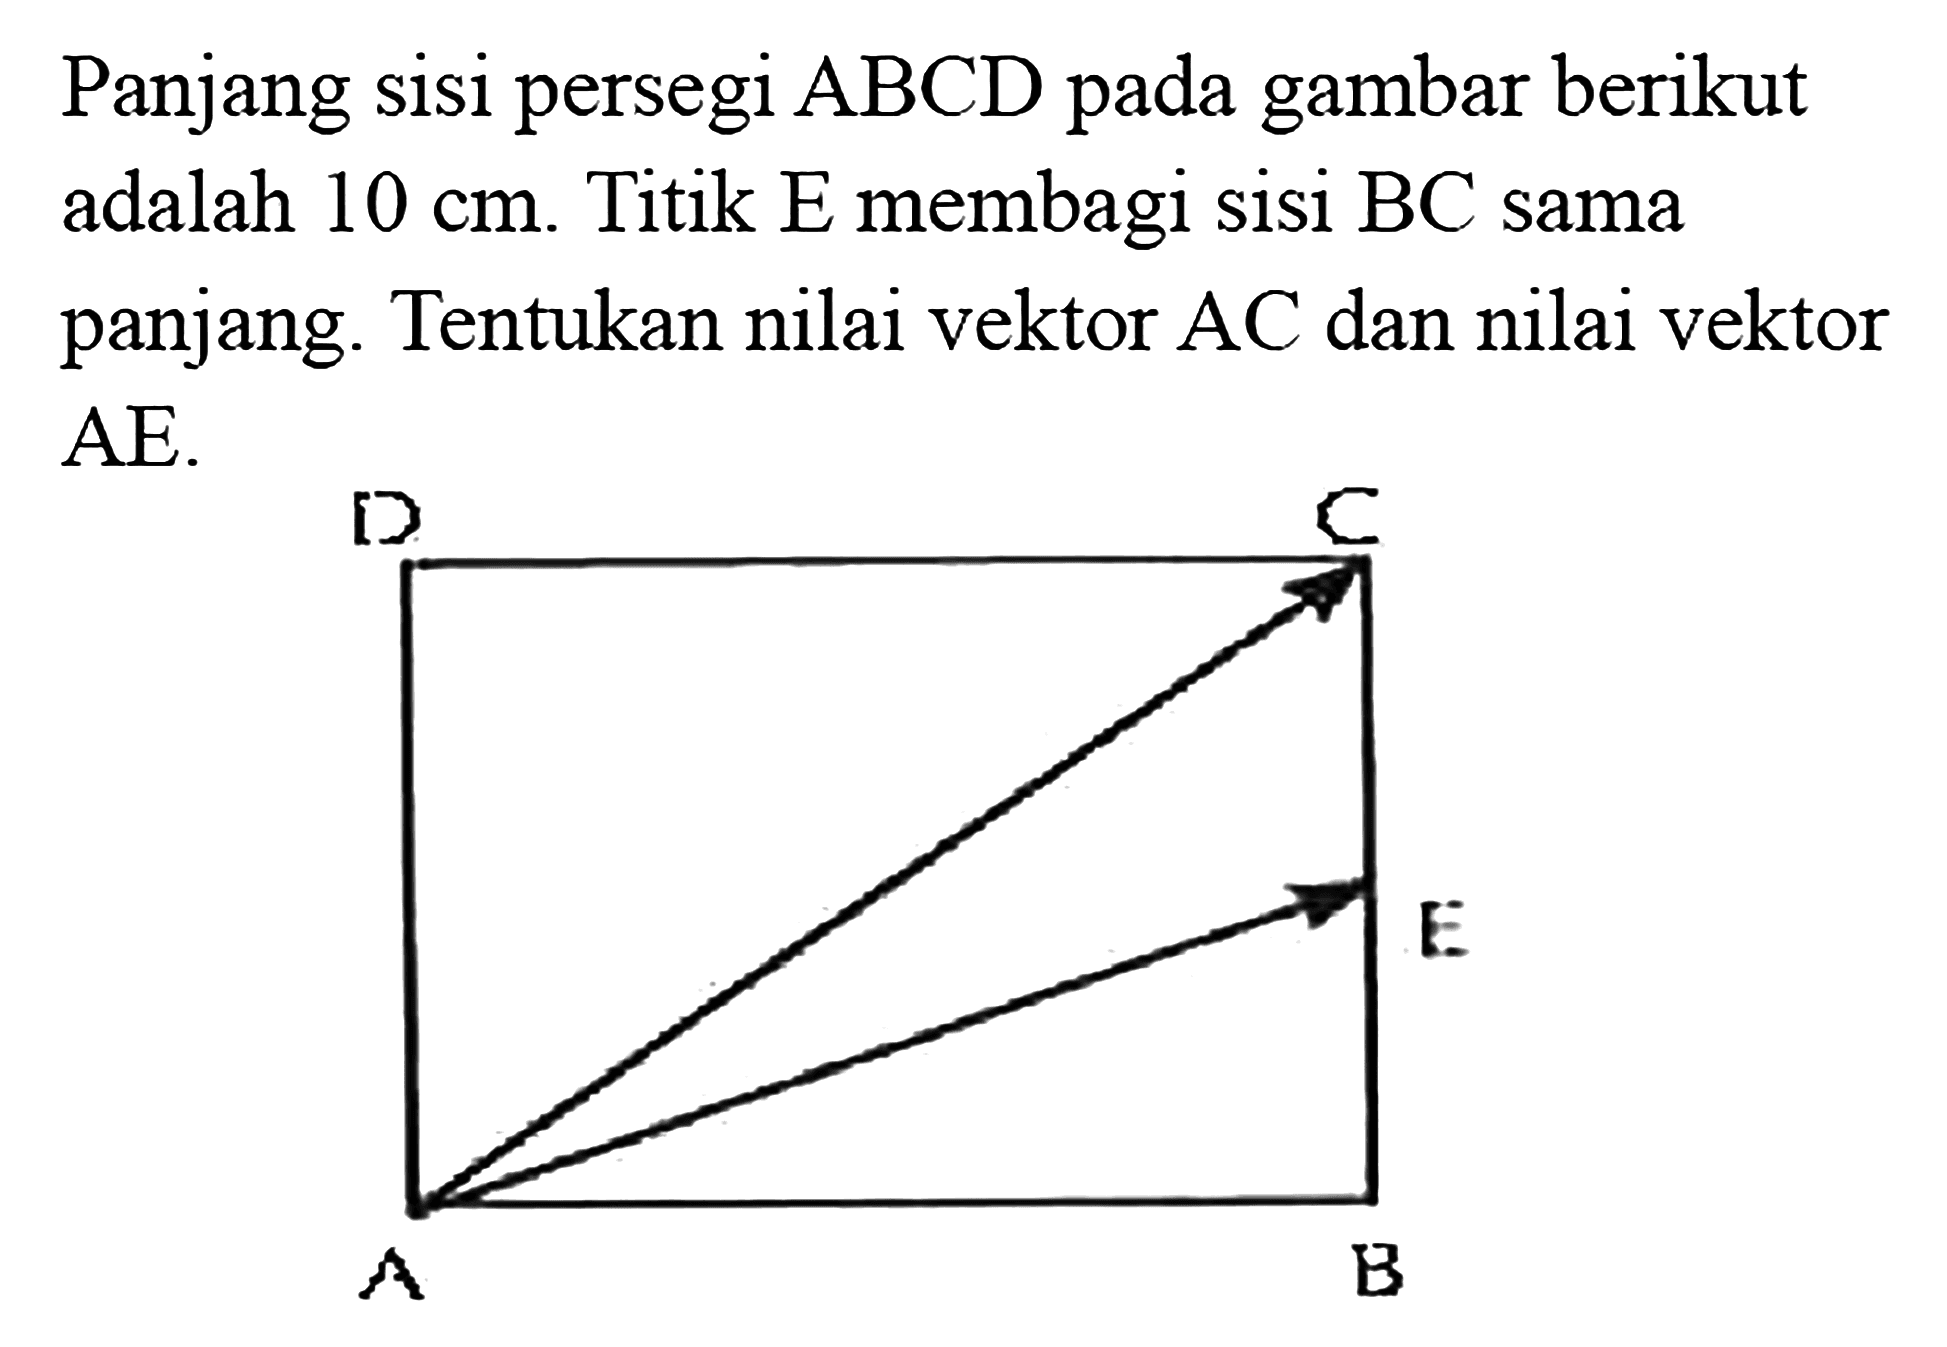 Panjang sisi persegi ABCD pada gambar berikut adalah 10 cm. Titik E membagi sisi BC sama panjang: Tentukan nilai vektor AC dan nilai vektor AE.